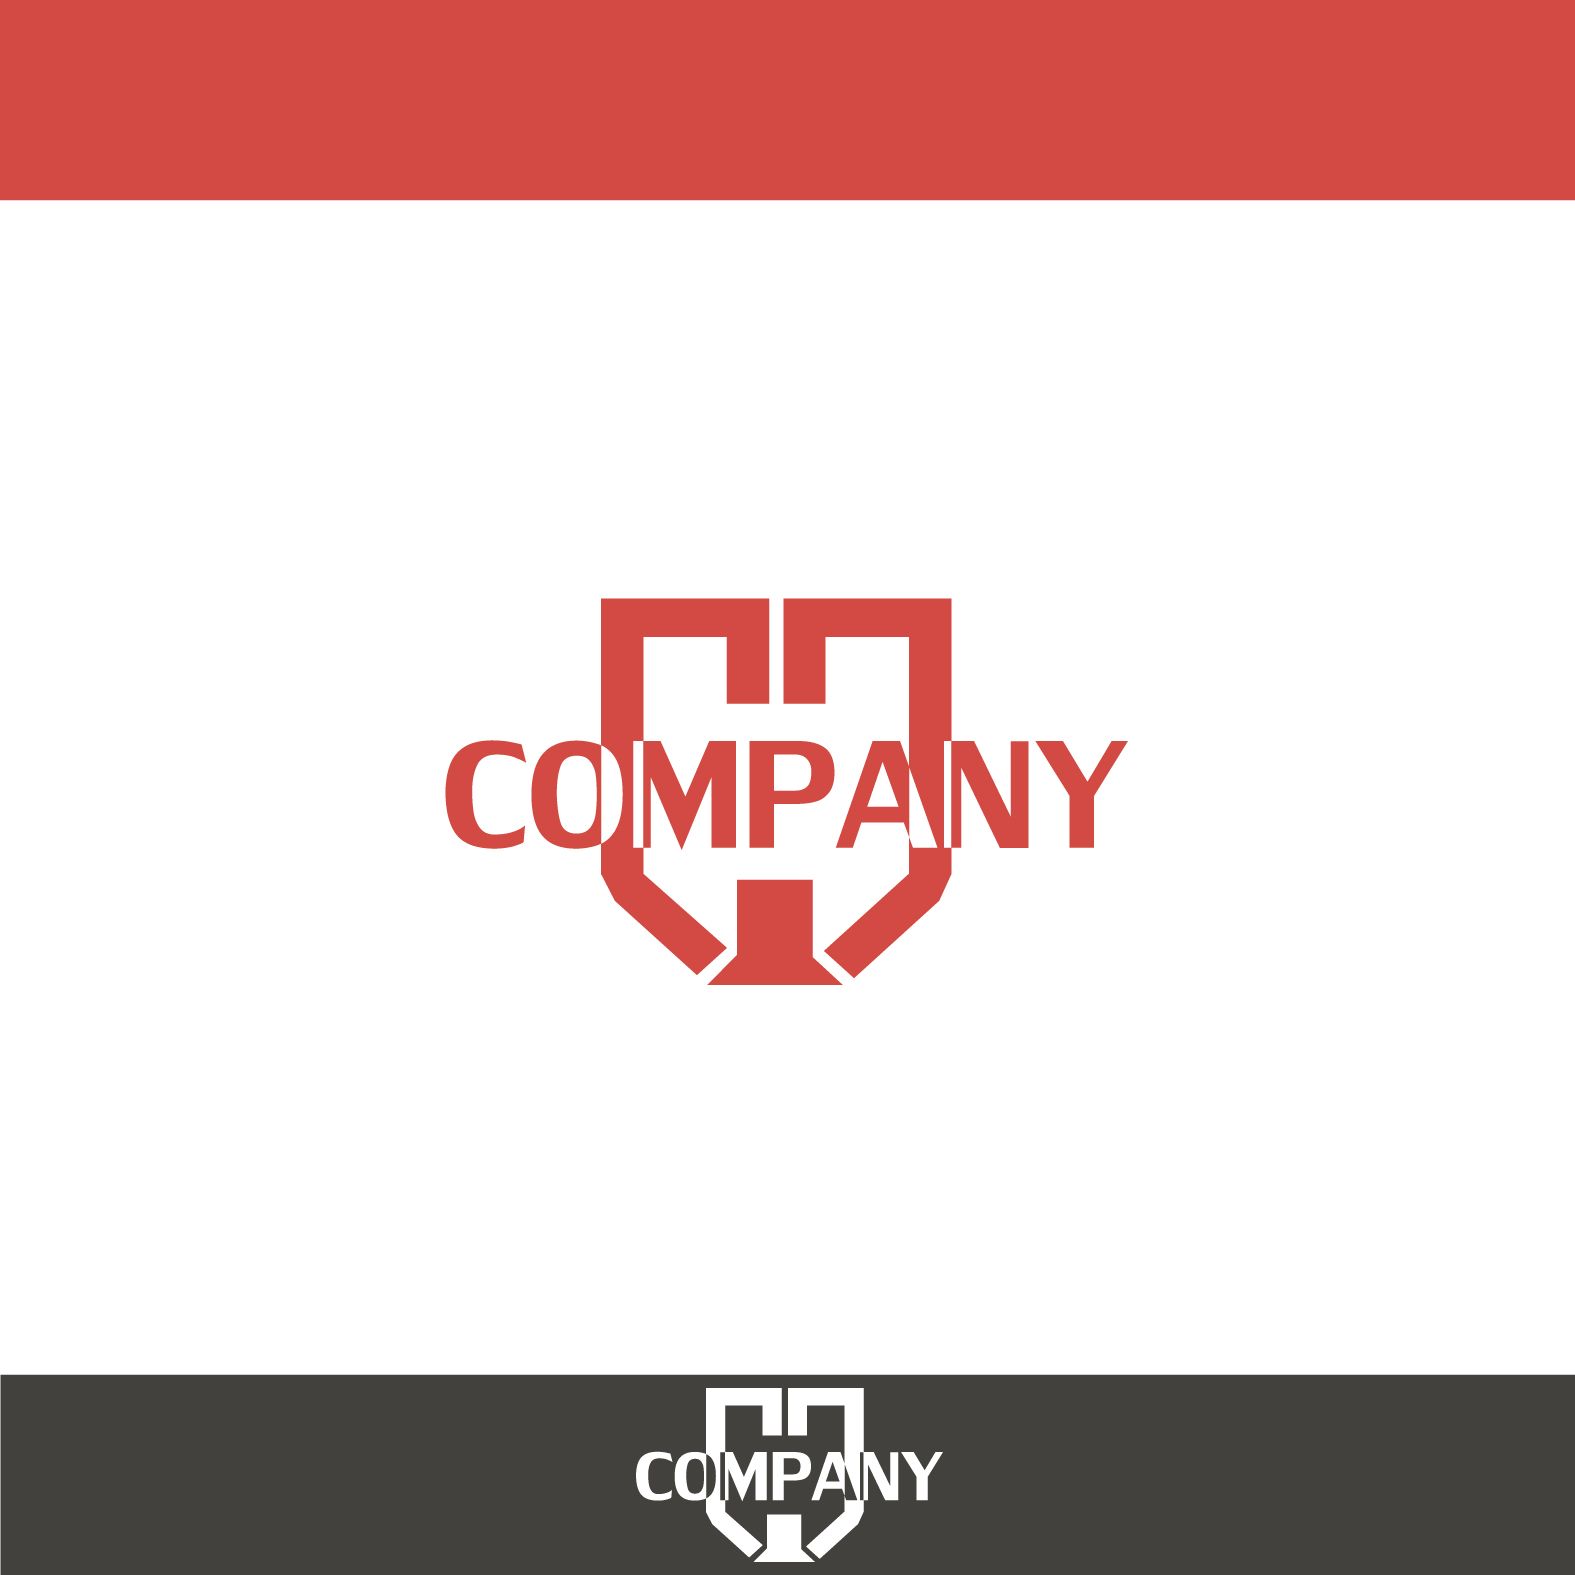 Логотип для GG COMPANY - дизайнер Dizkonov_Marat